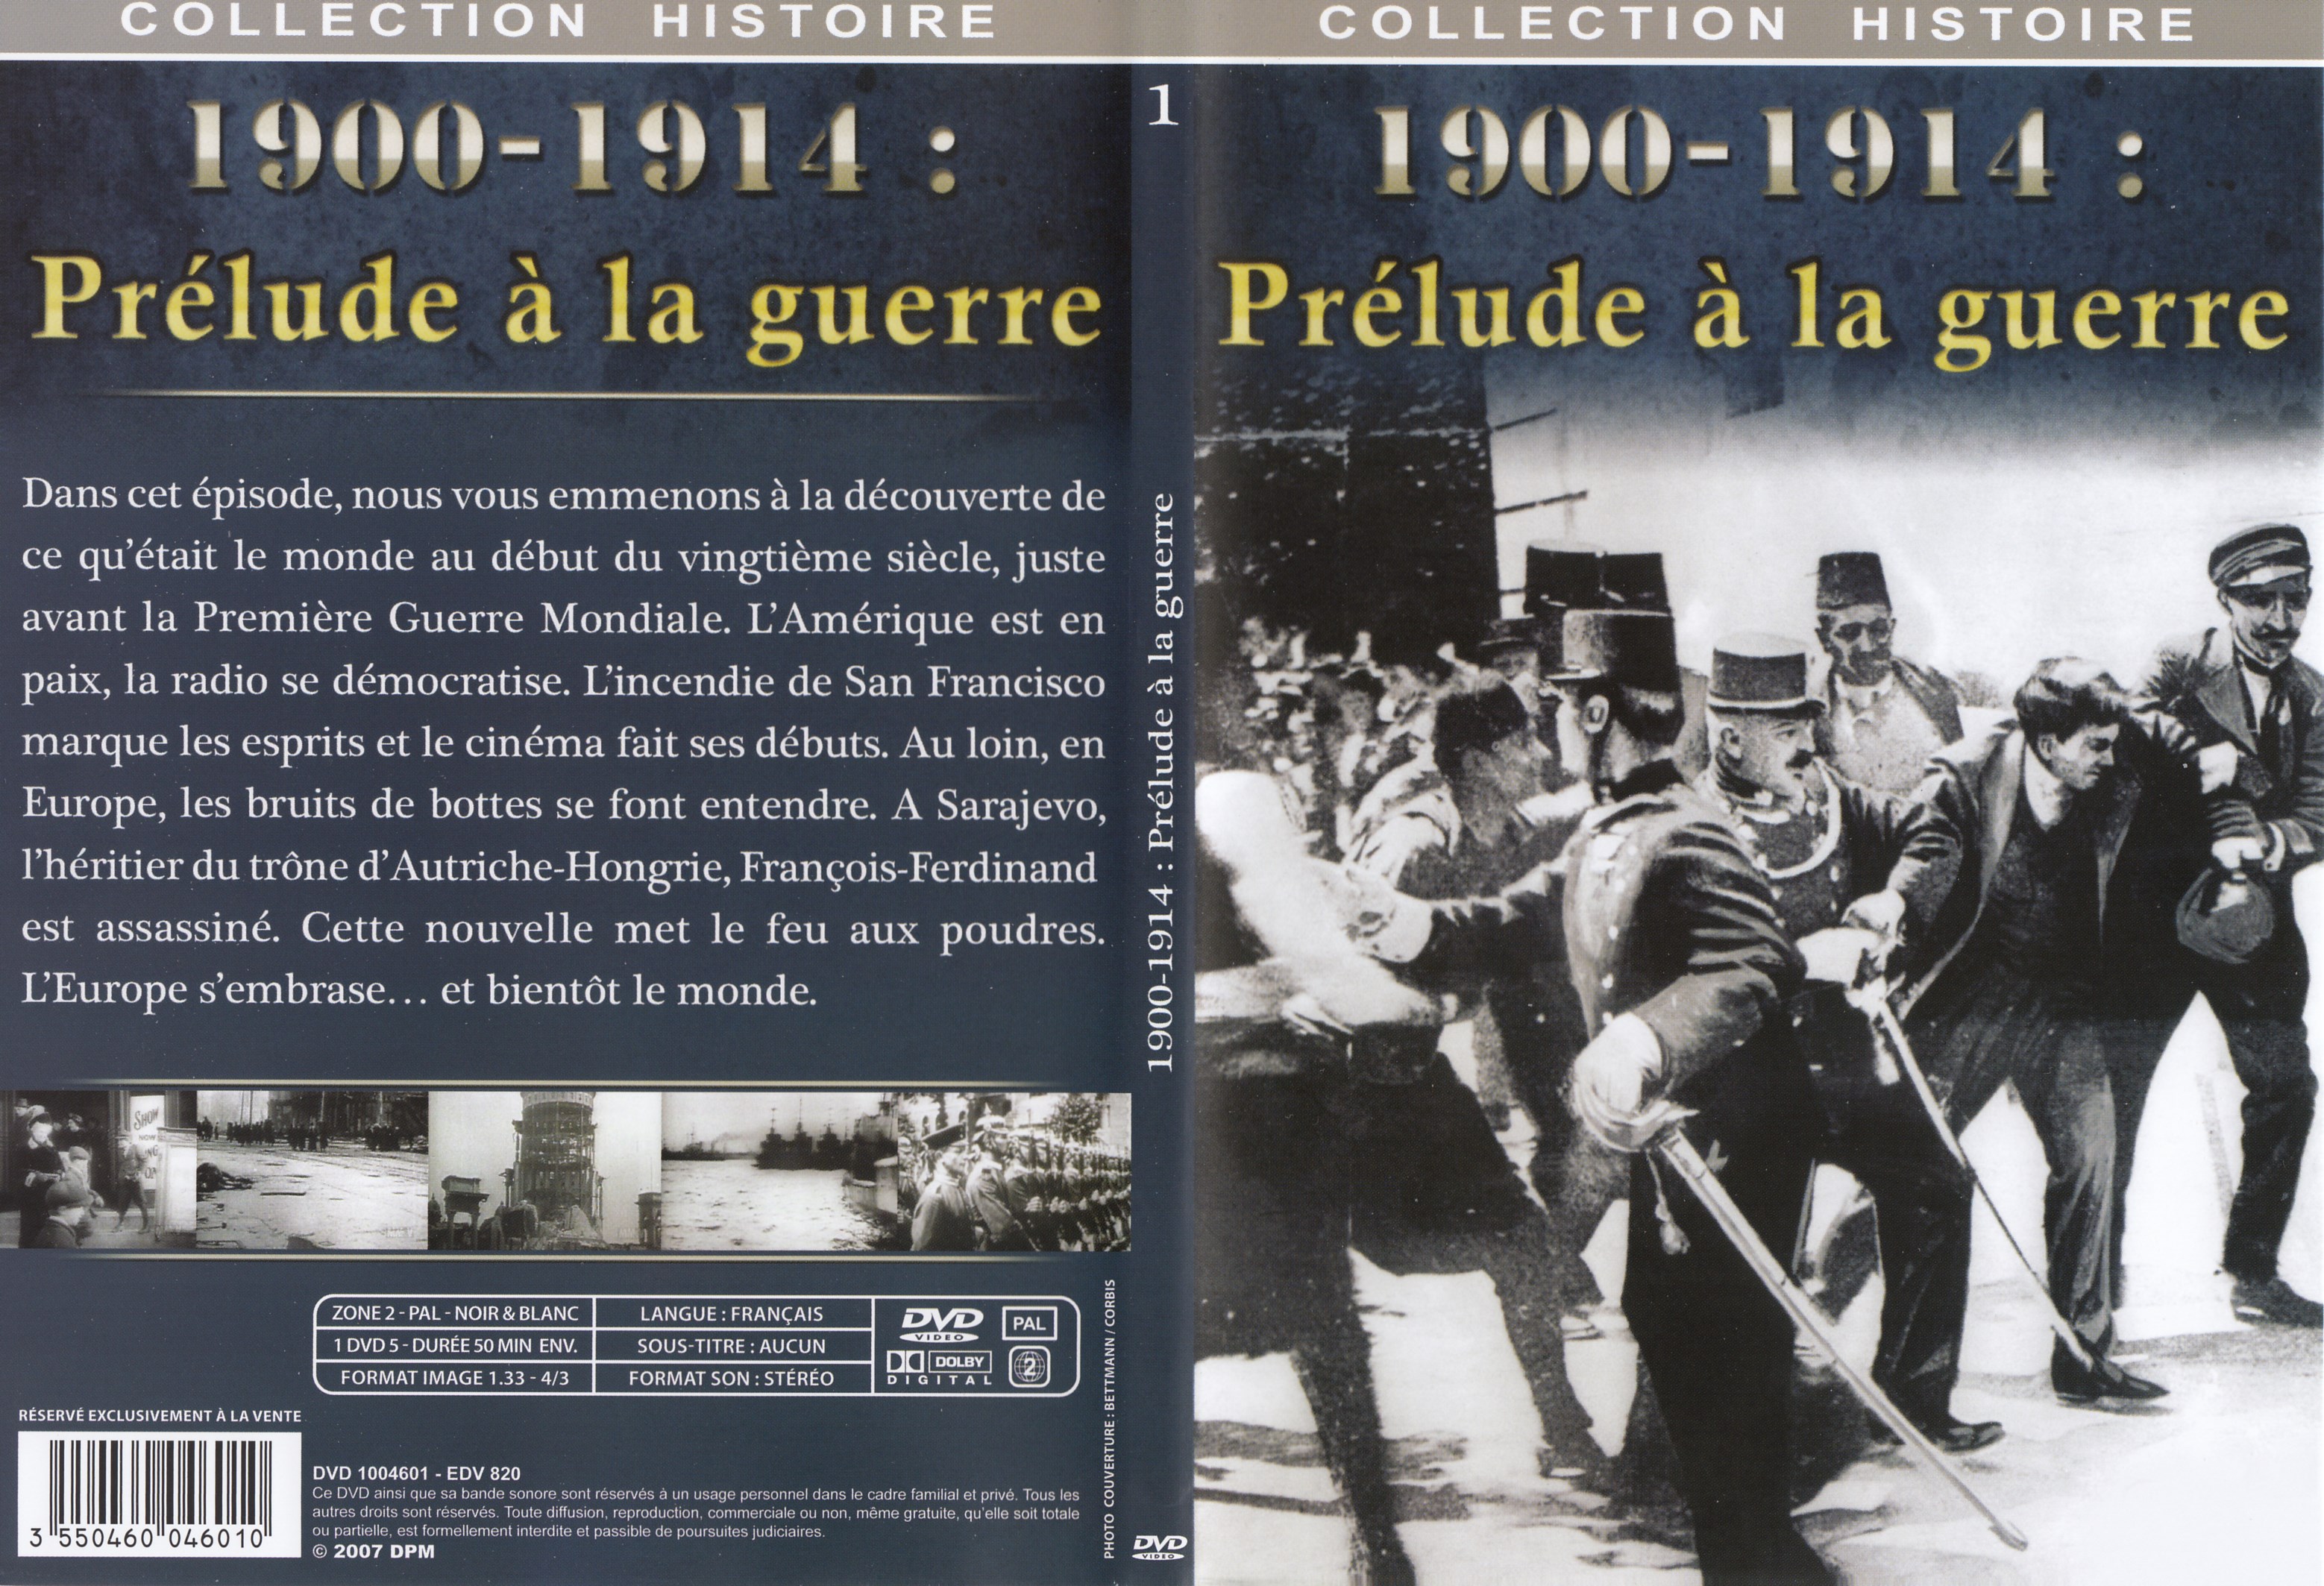 Jaquette DVD Collection Histoire DVD 1 = 1900 - 1914 Prlude  la guerre